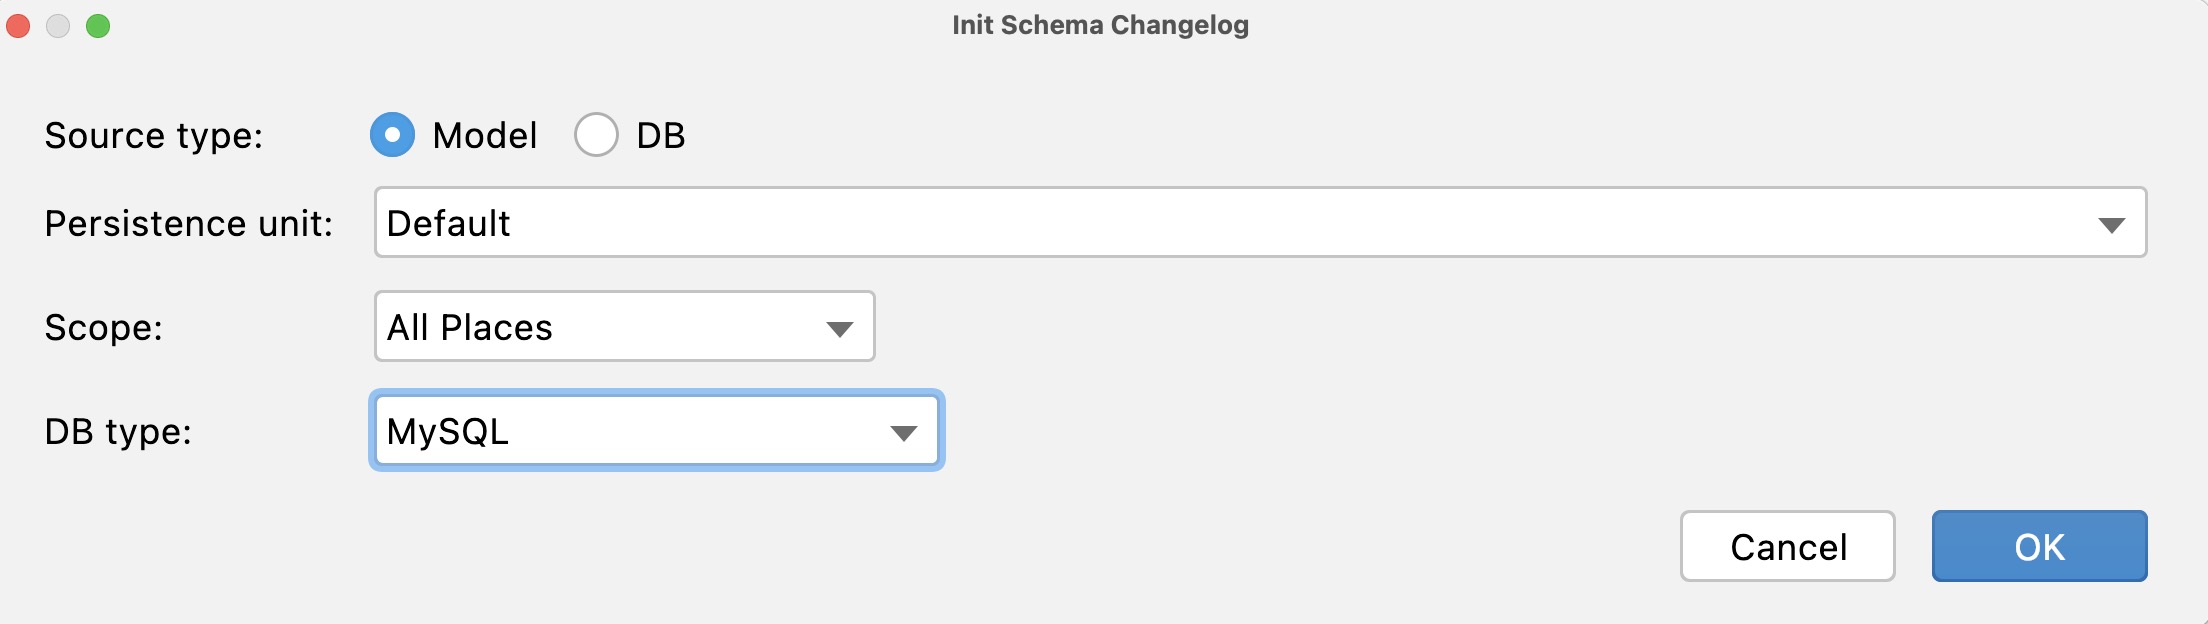 init-schema-changelog